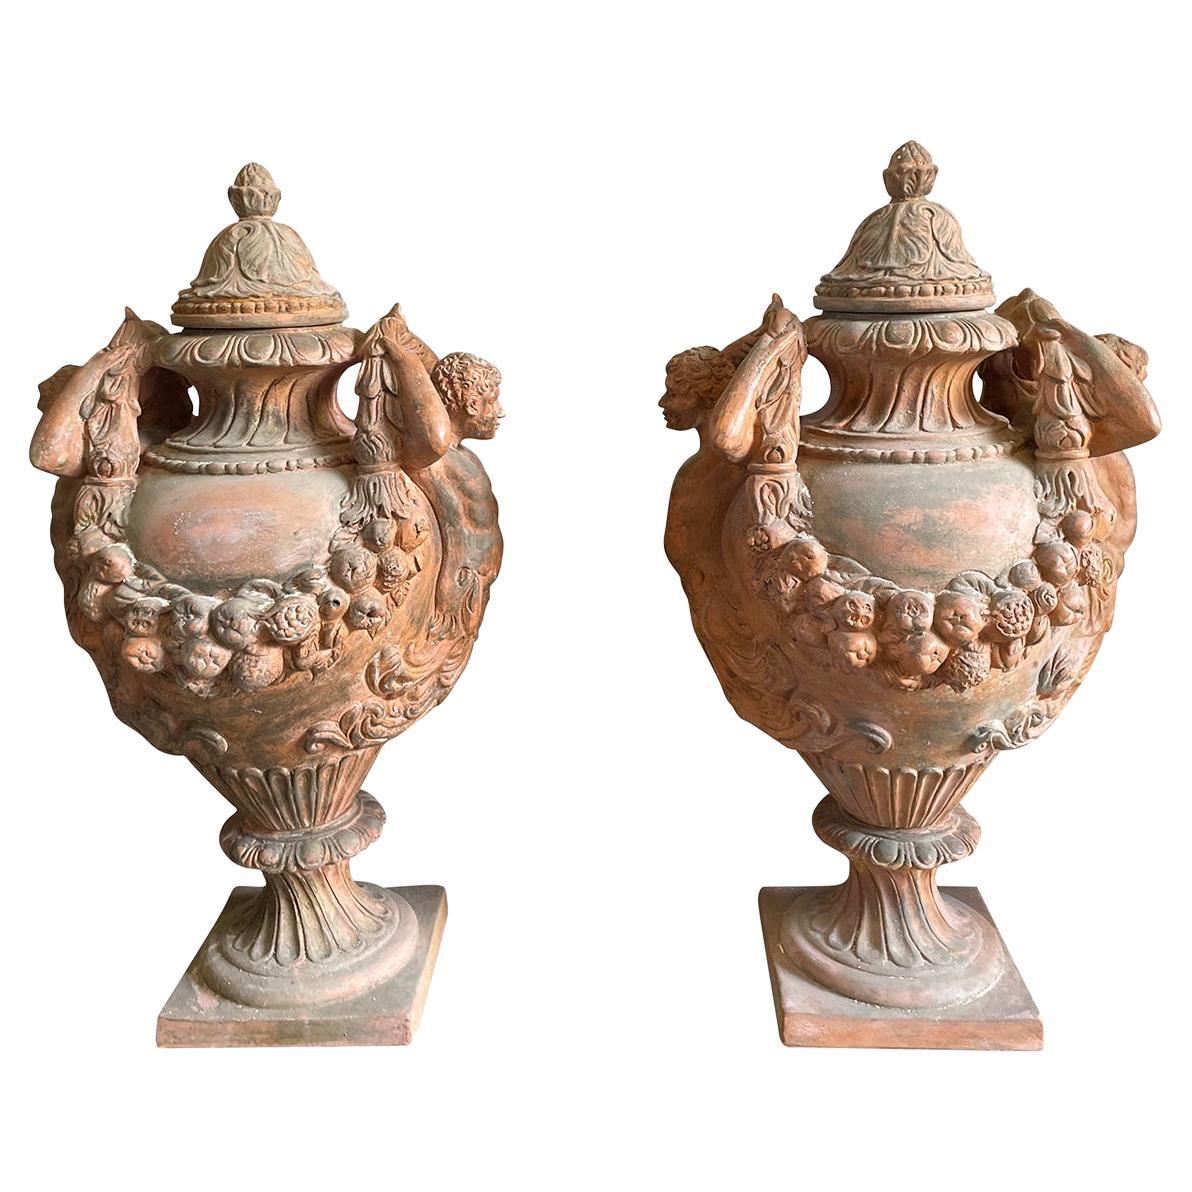 Paire d'urnes italiennes anciennes en terre cuite du 19ème siècle de style Renaissance